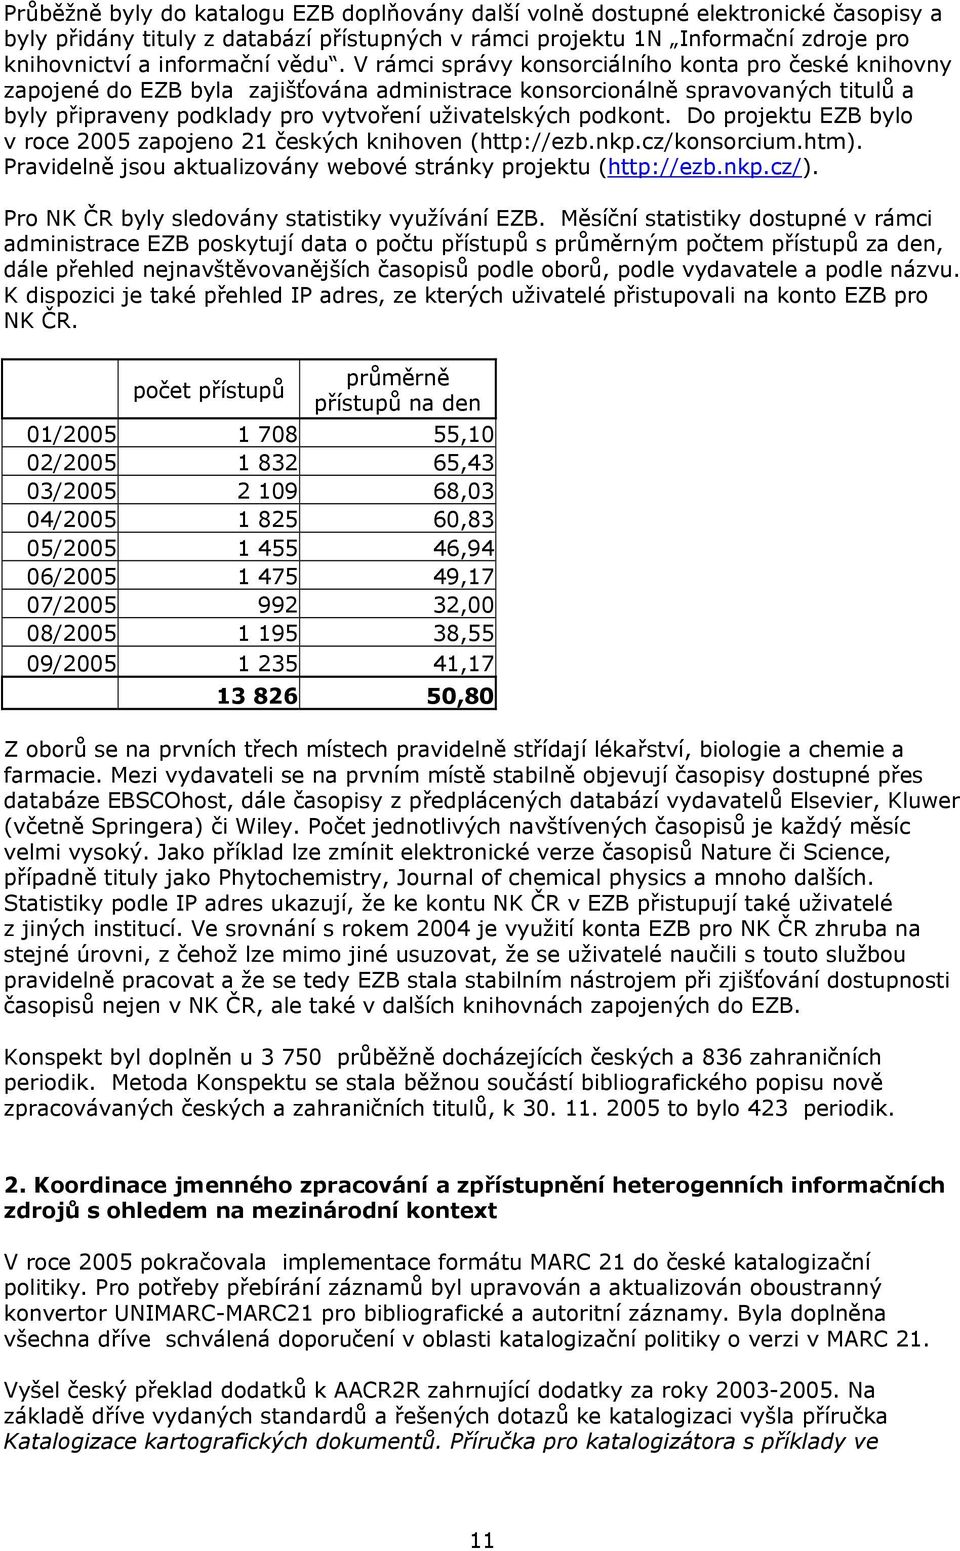 podkont. Do projektu EZB bylo v roce 2005 zapojeno 21 českých knihoven (http://ezb.nkp.cz/konsorcium.htm). Pravidelně jsou aktualizovány webové stránky projektu (http://ezb.nkp.cz/).